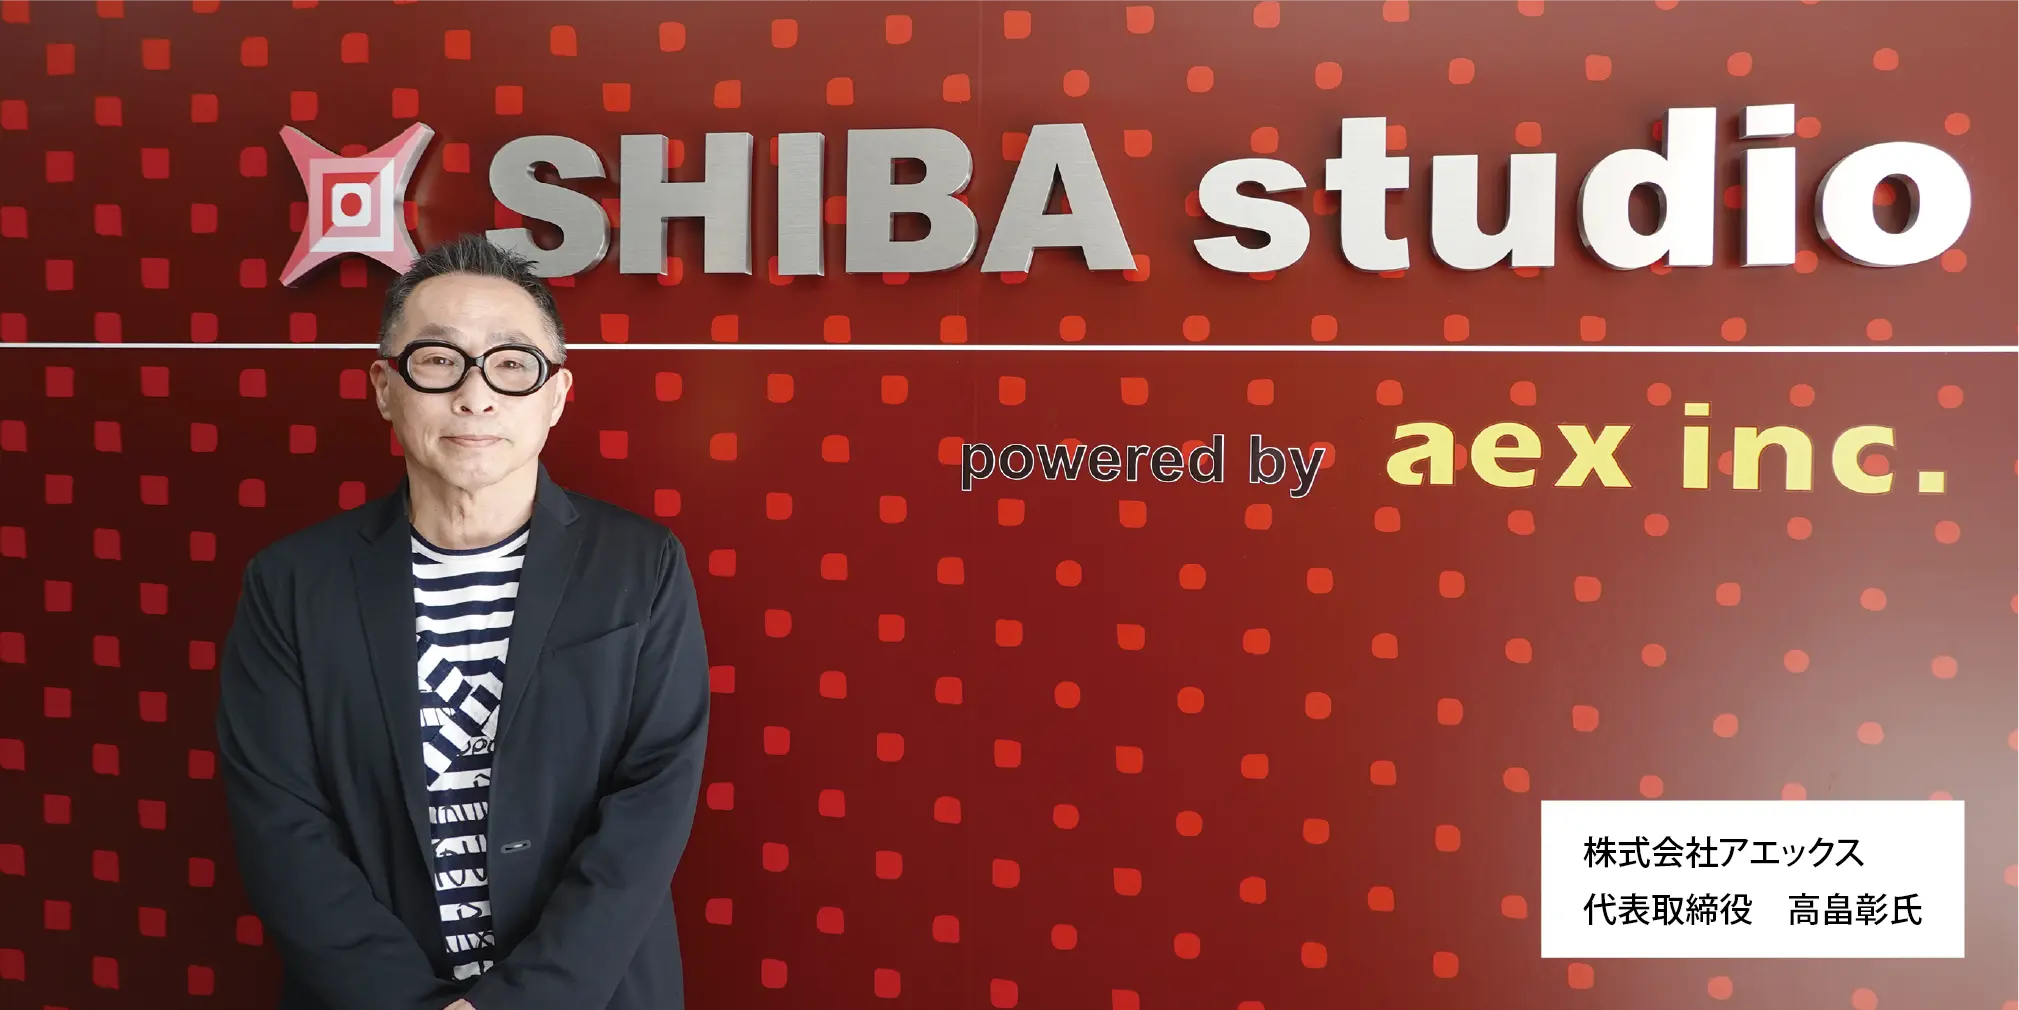 最先端ソリューションを提供しているクレッセント社 のユーザー紹介にSHIBA studioが取り上げられました